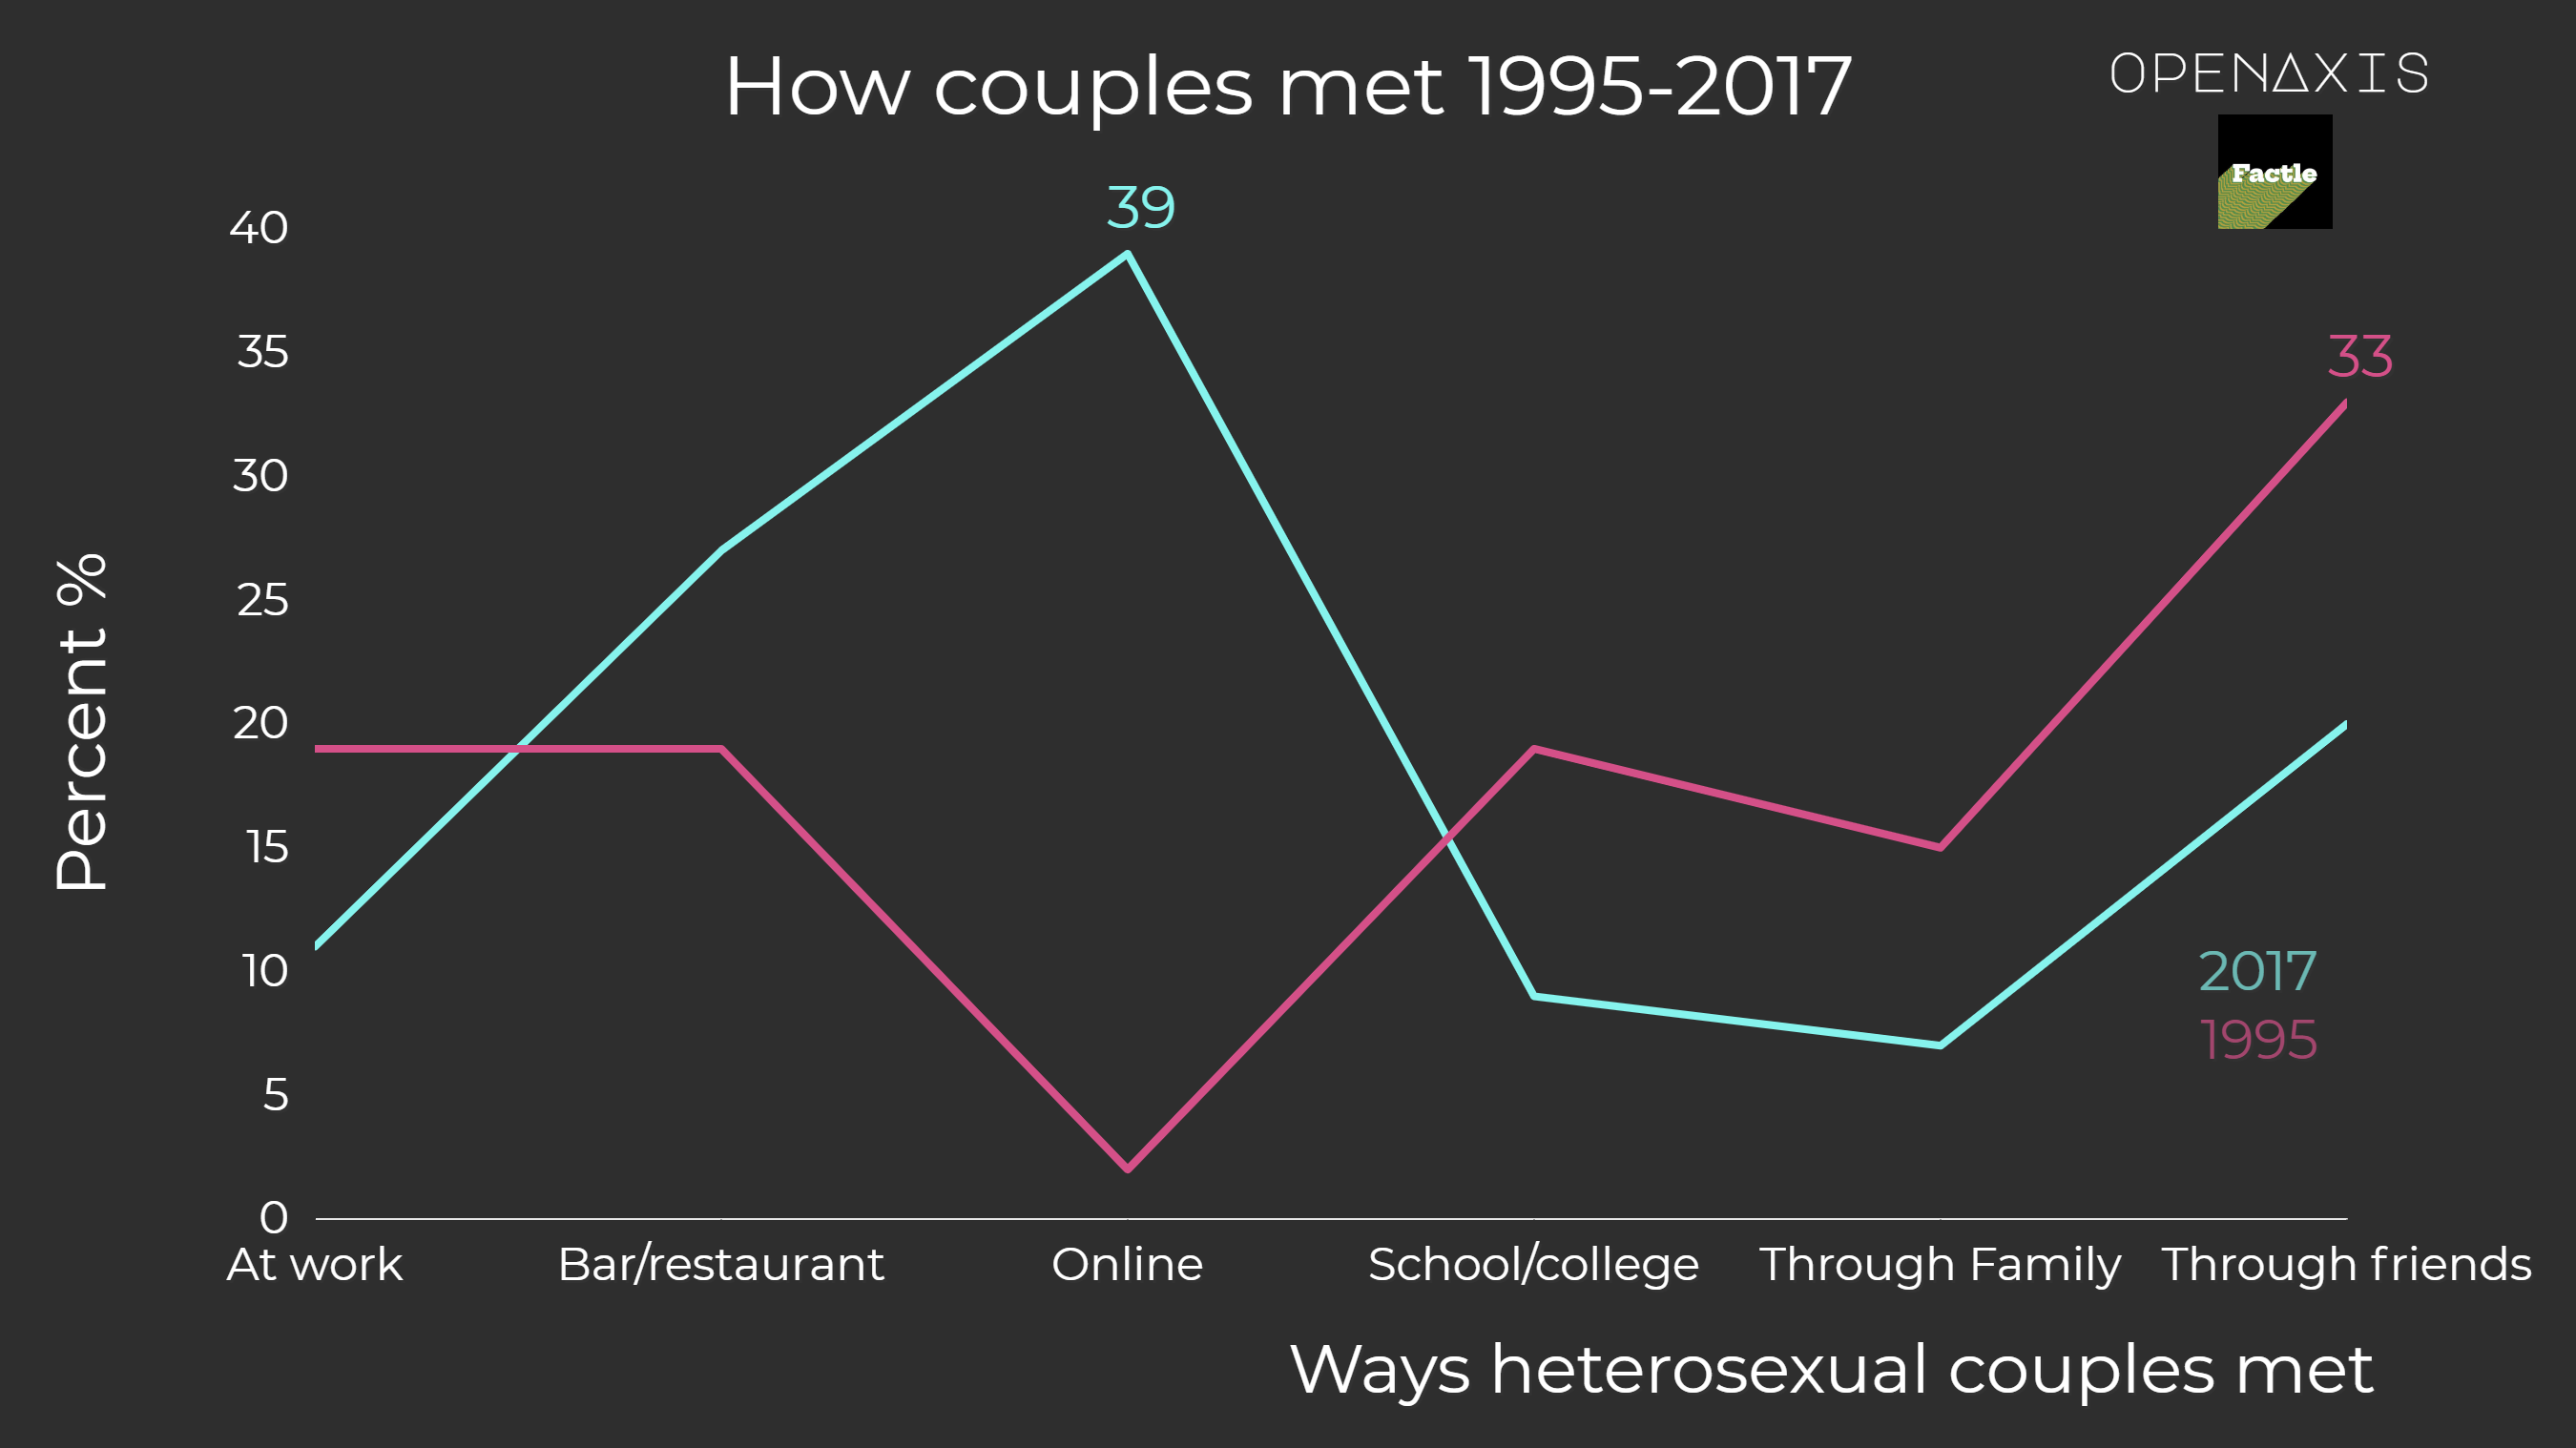 "How couples met 1995-2017"